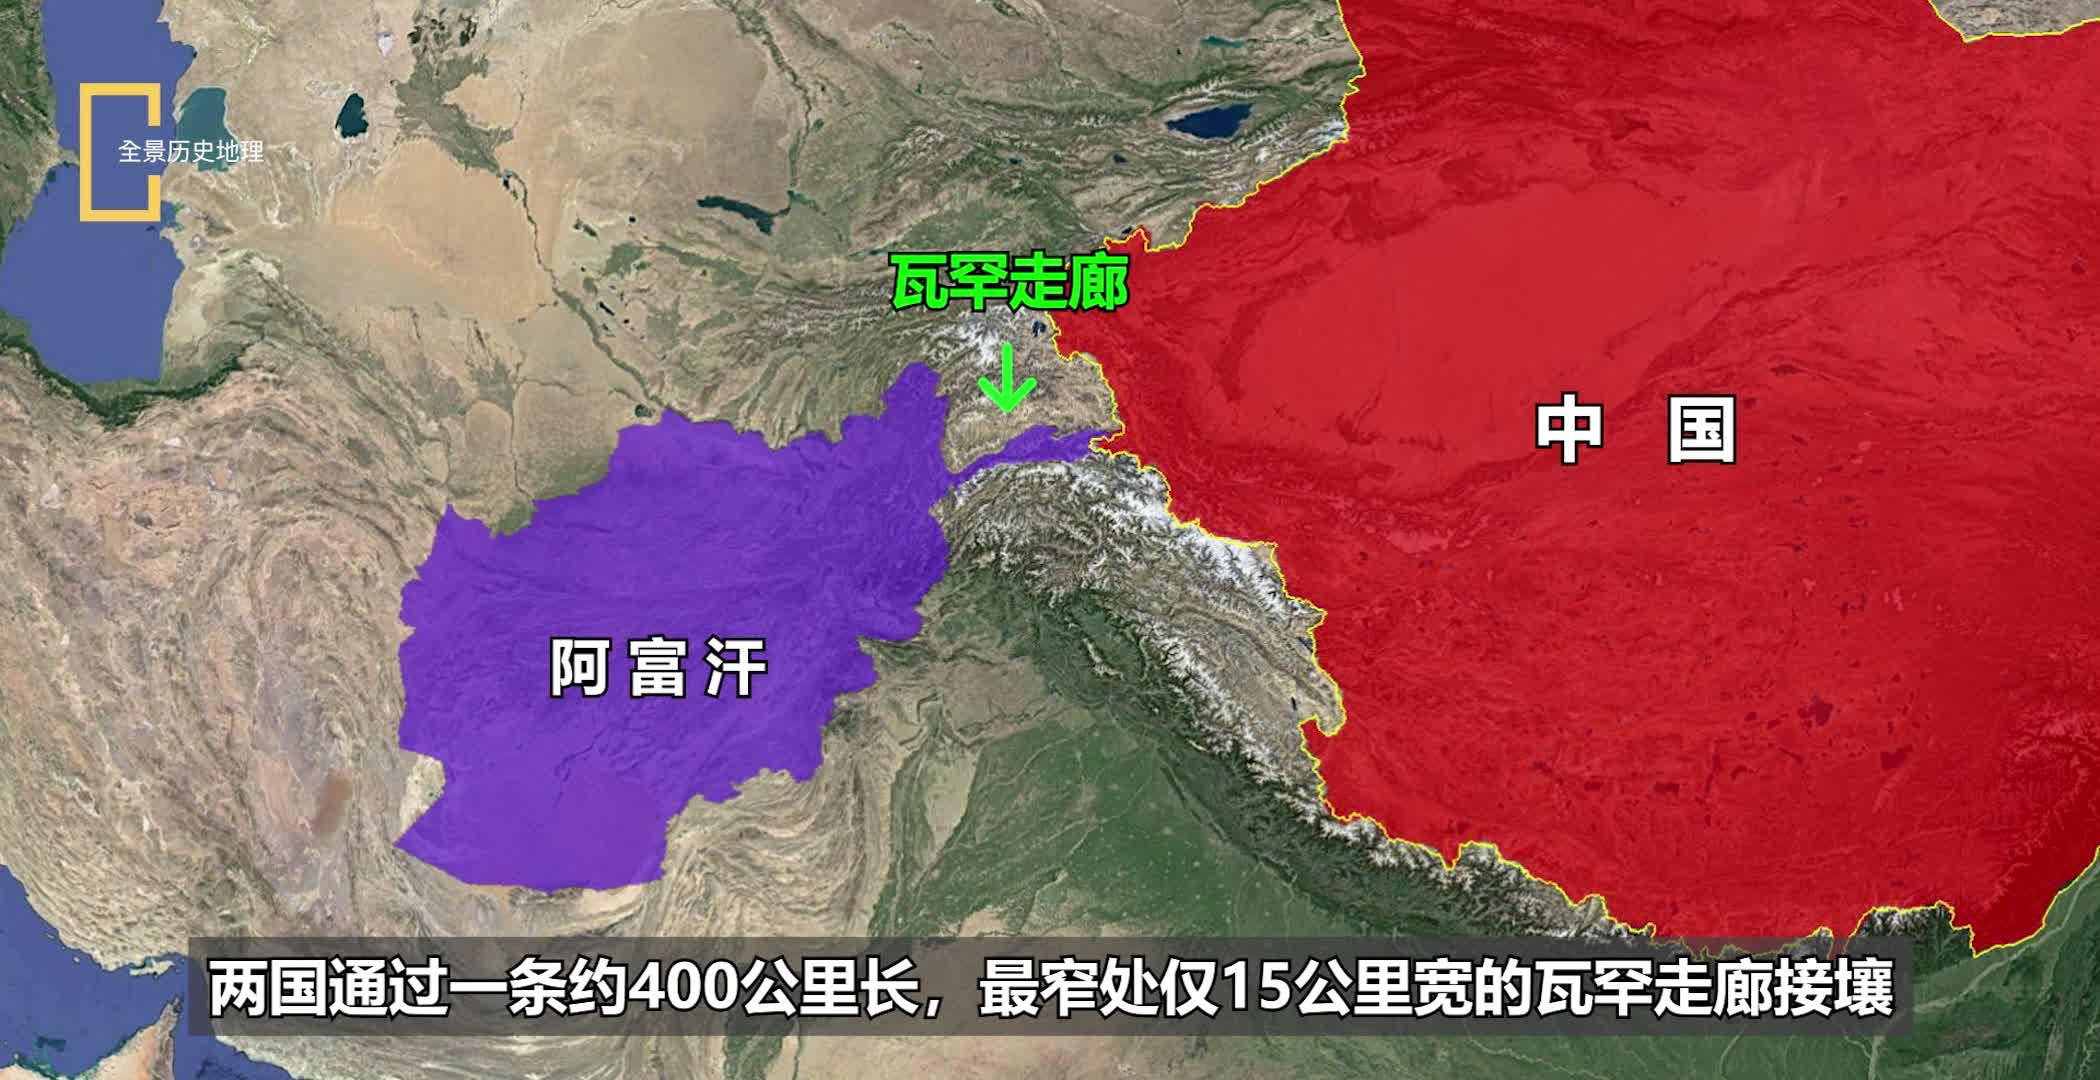 阿富汗地理位置图片